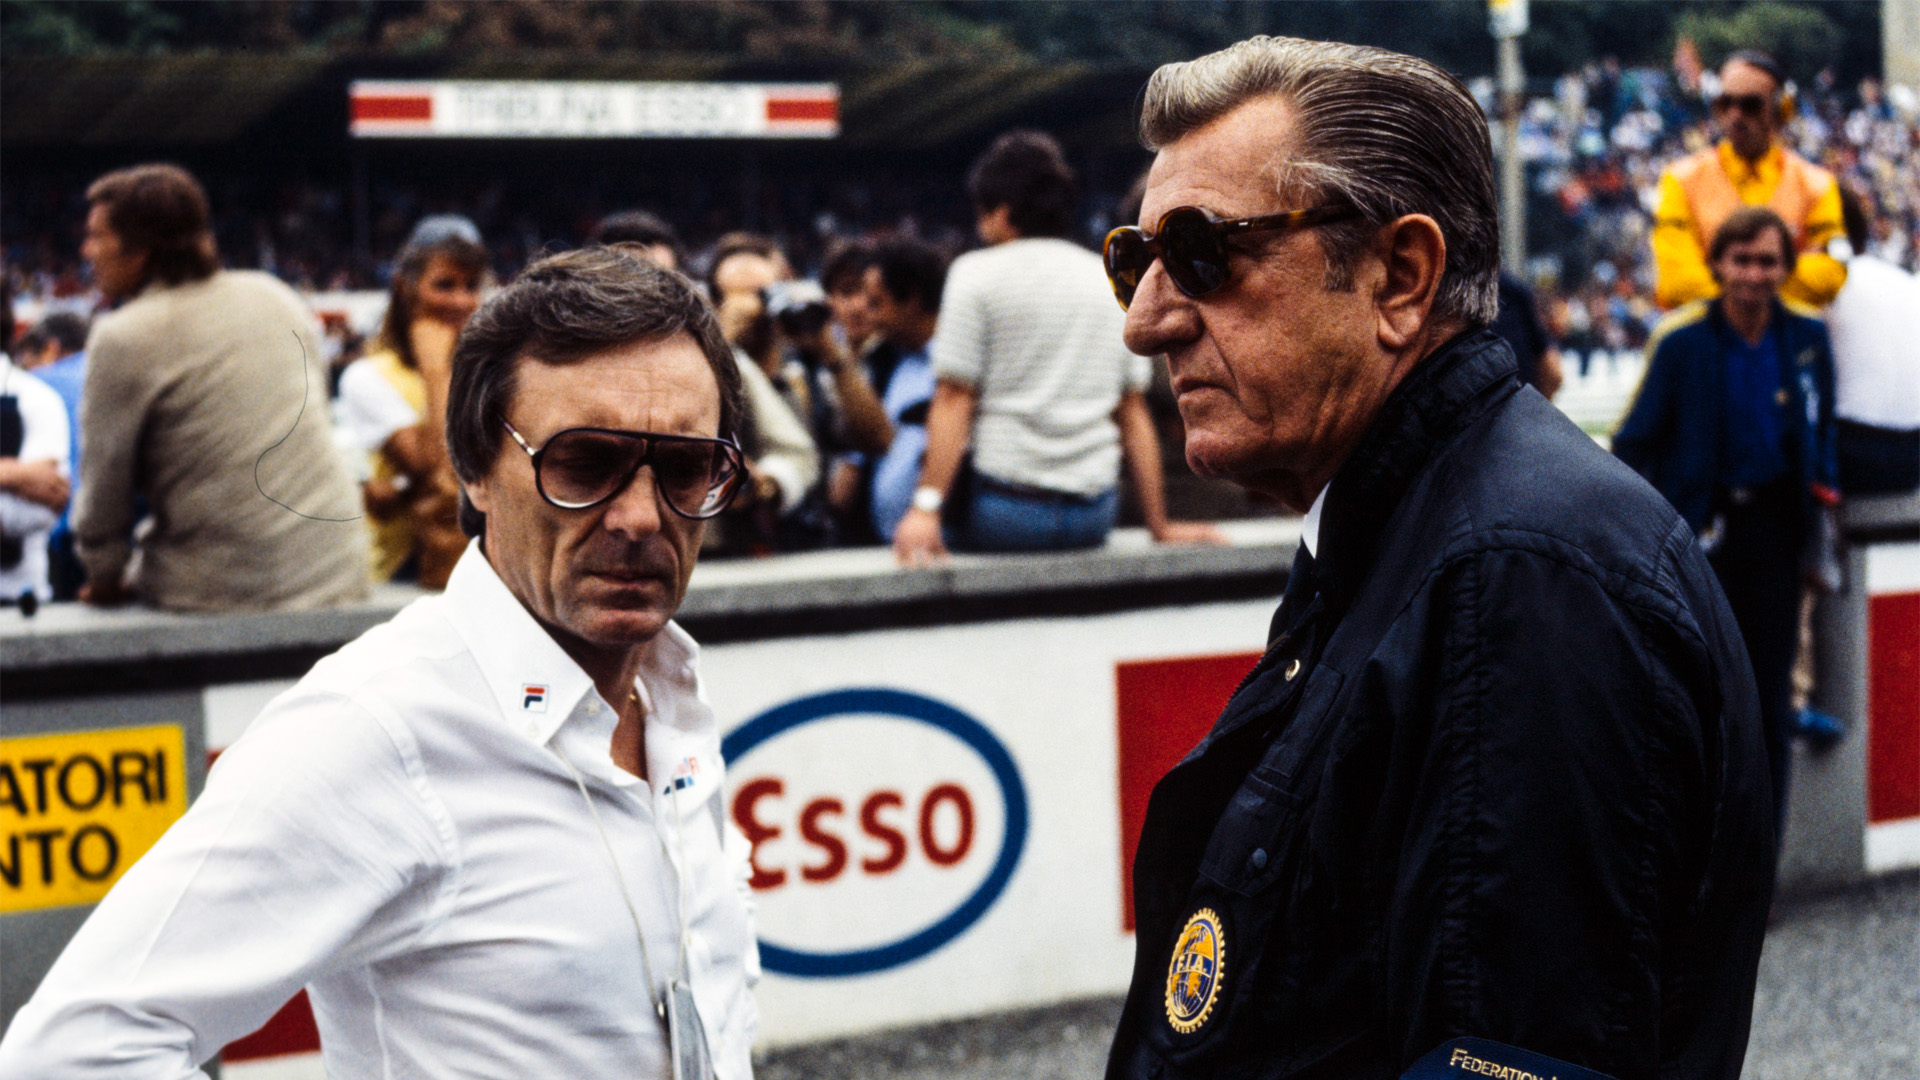    F1 pics that go hard: Bernie Ecclestone i szef FISA, Jean-Marie Balestre, podczas GP Włoch 1983 (credit: materiały prasowe Viaplay)